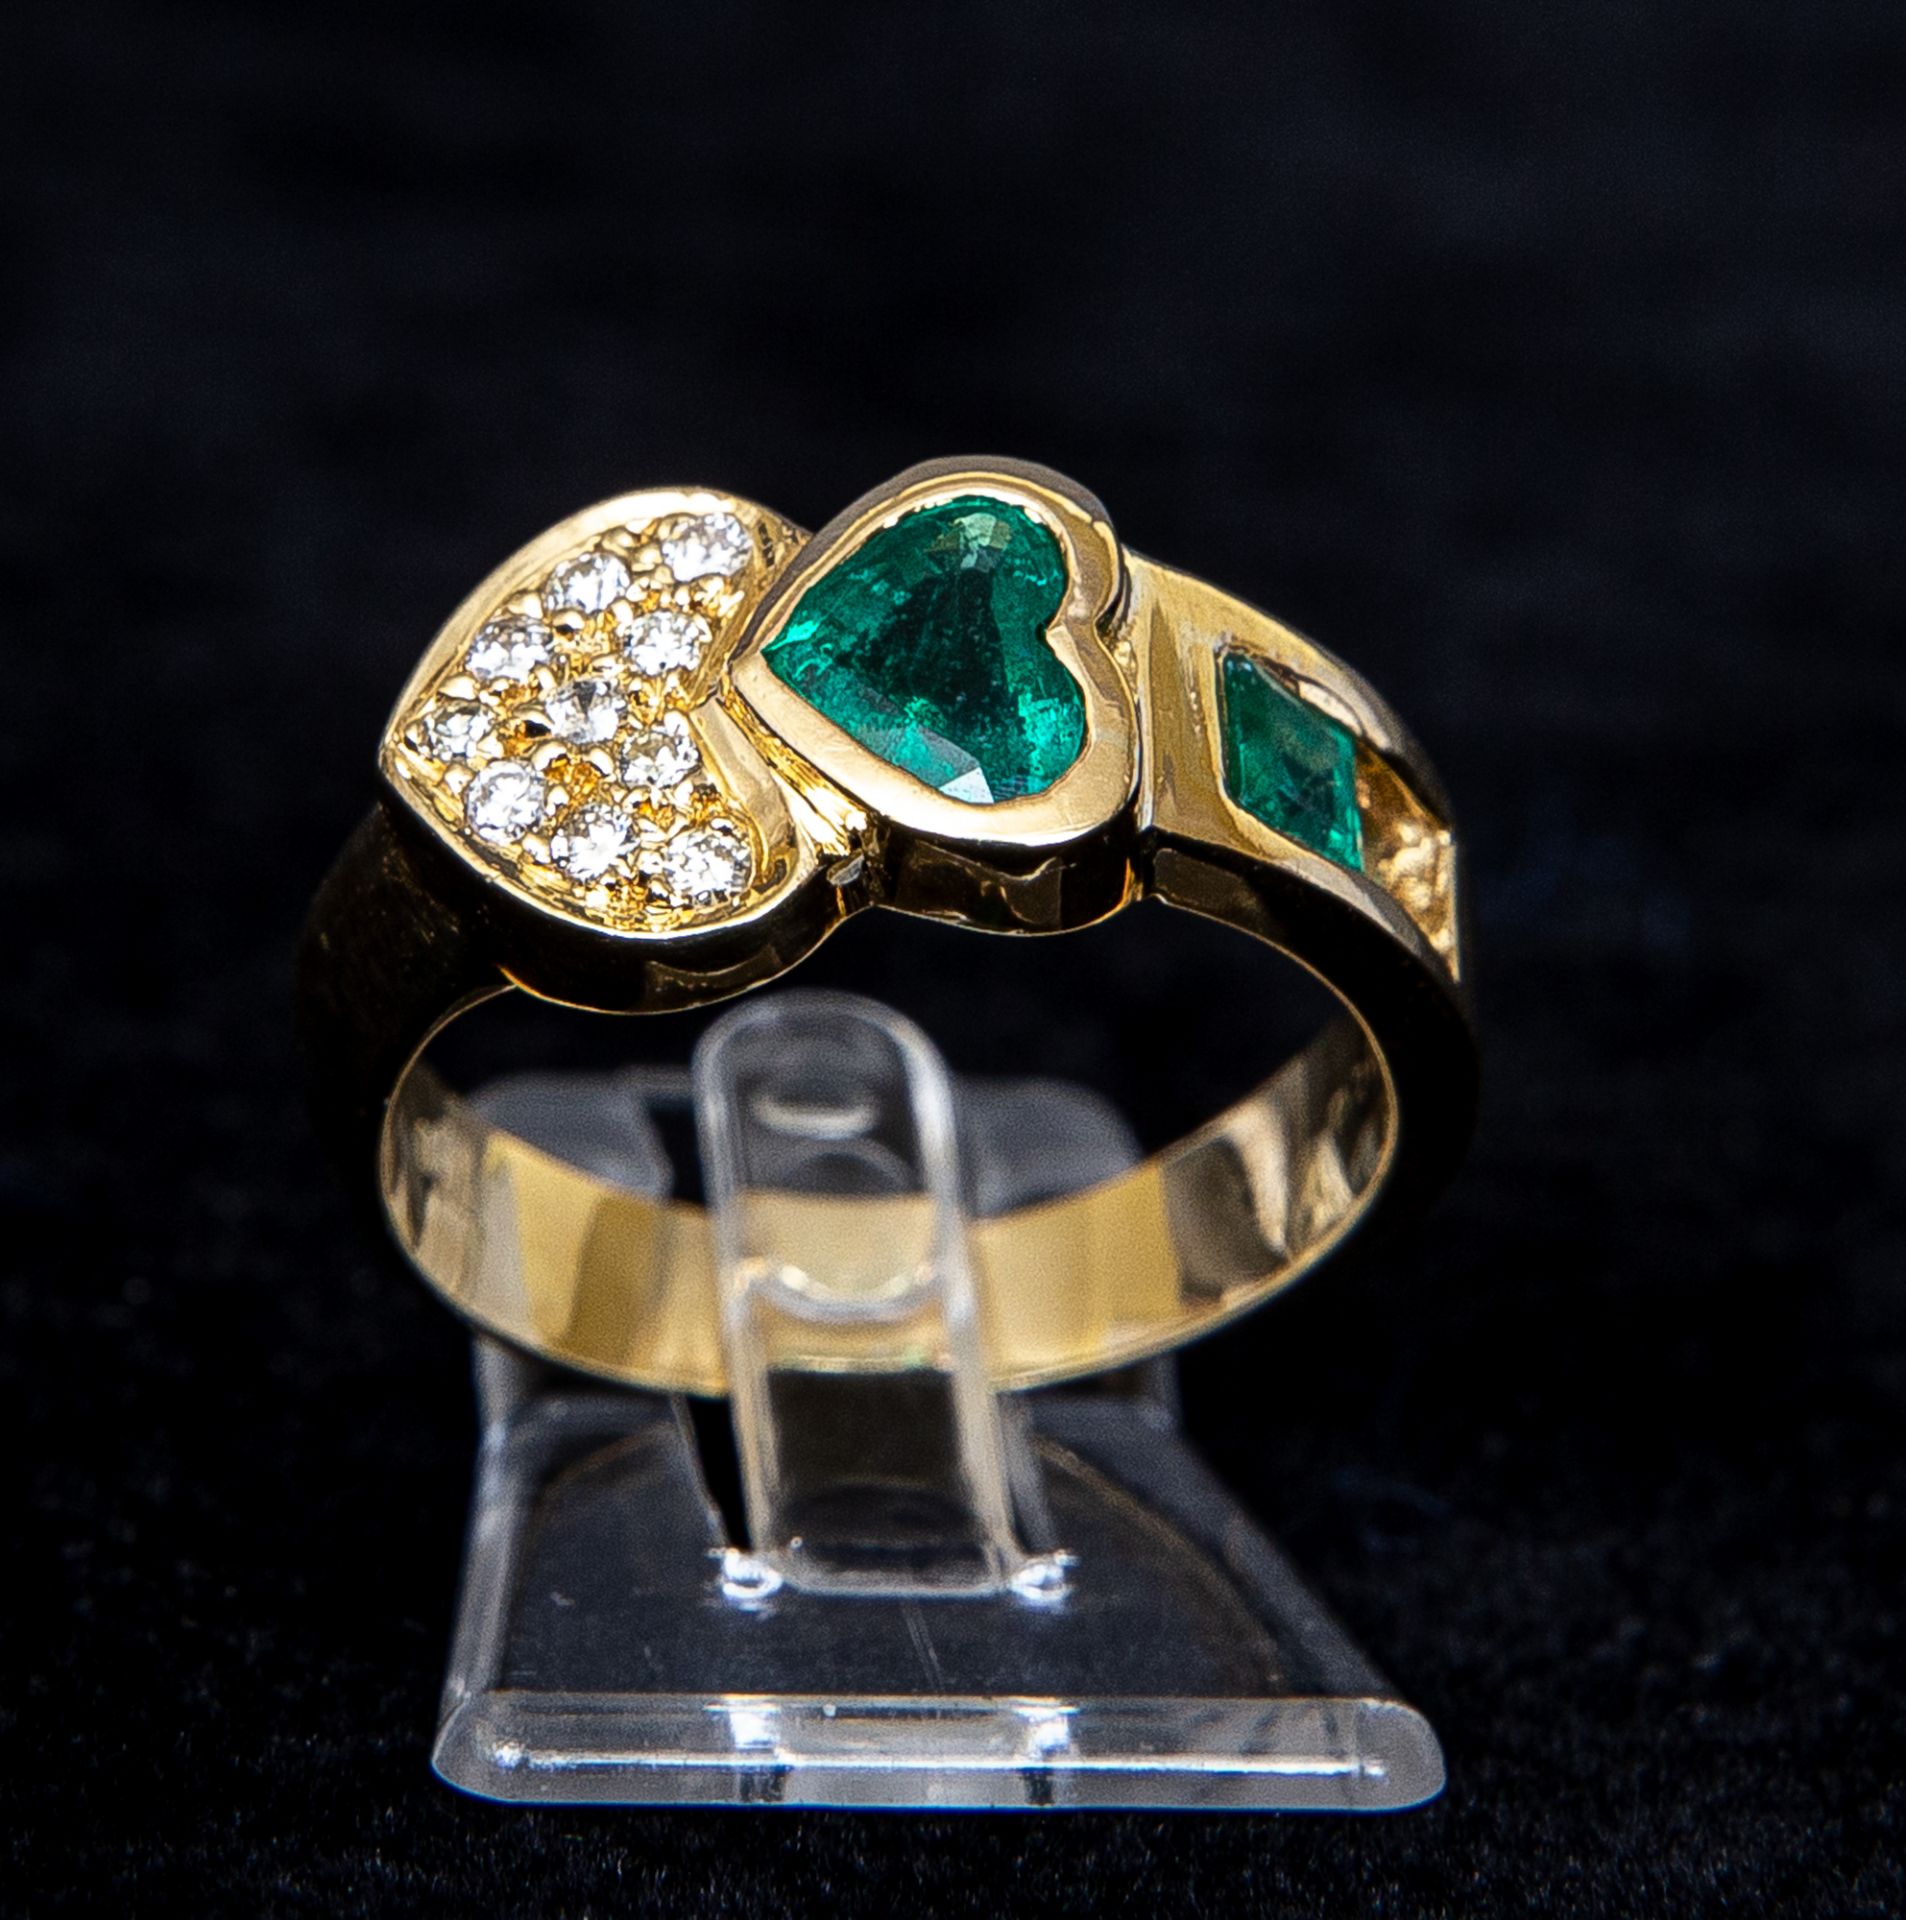 Ring mit Smaragd in Herzform und Diamantbesatz, GG 750 - Bild 3 aus 3